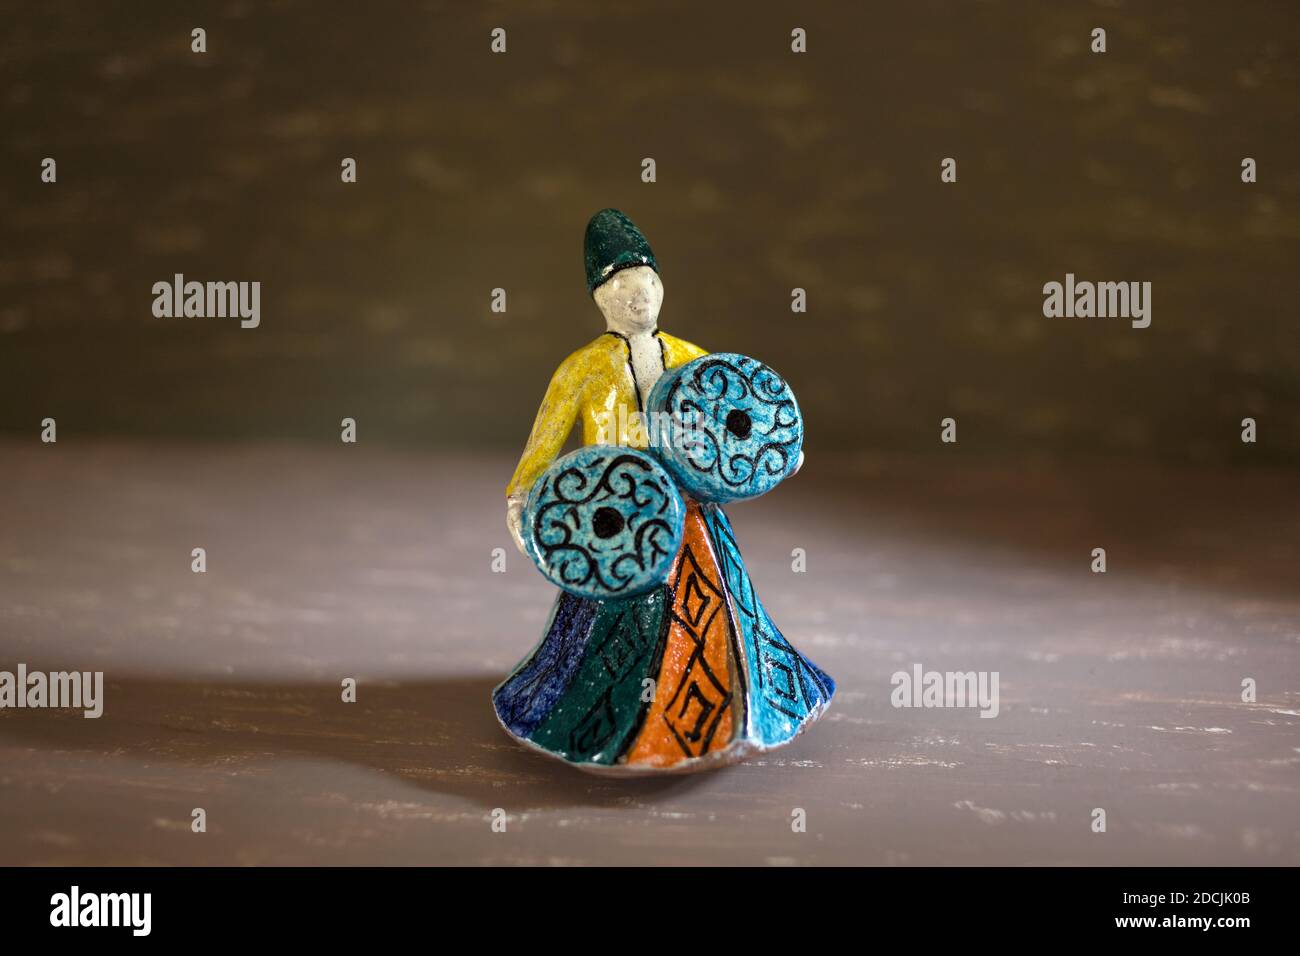 Le Caire, novembre 10. Statue en poterie colorée de danse dervish sur fond de couleurs différentes avec effet de lumière mystère et d'atmosphère spirituelle. Banque D'Images